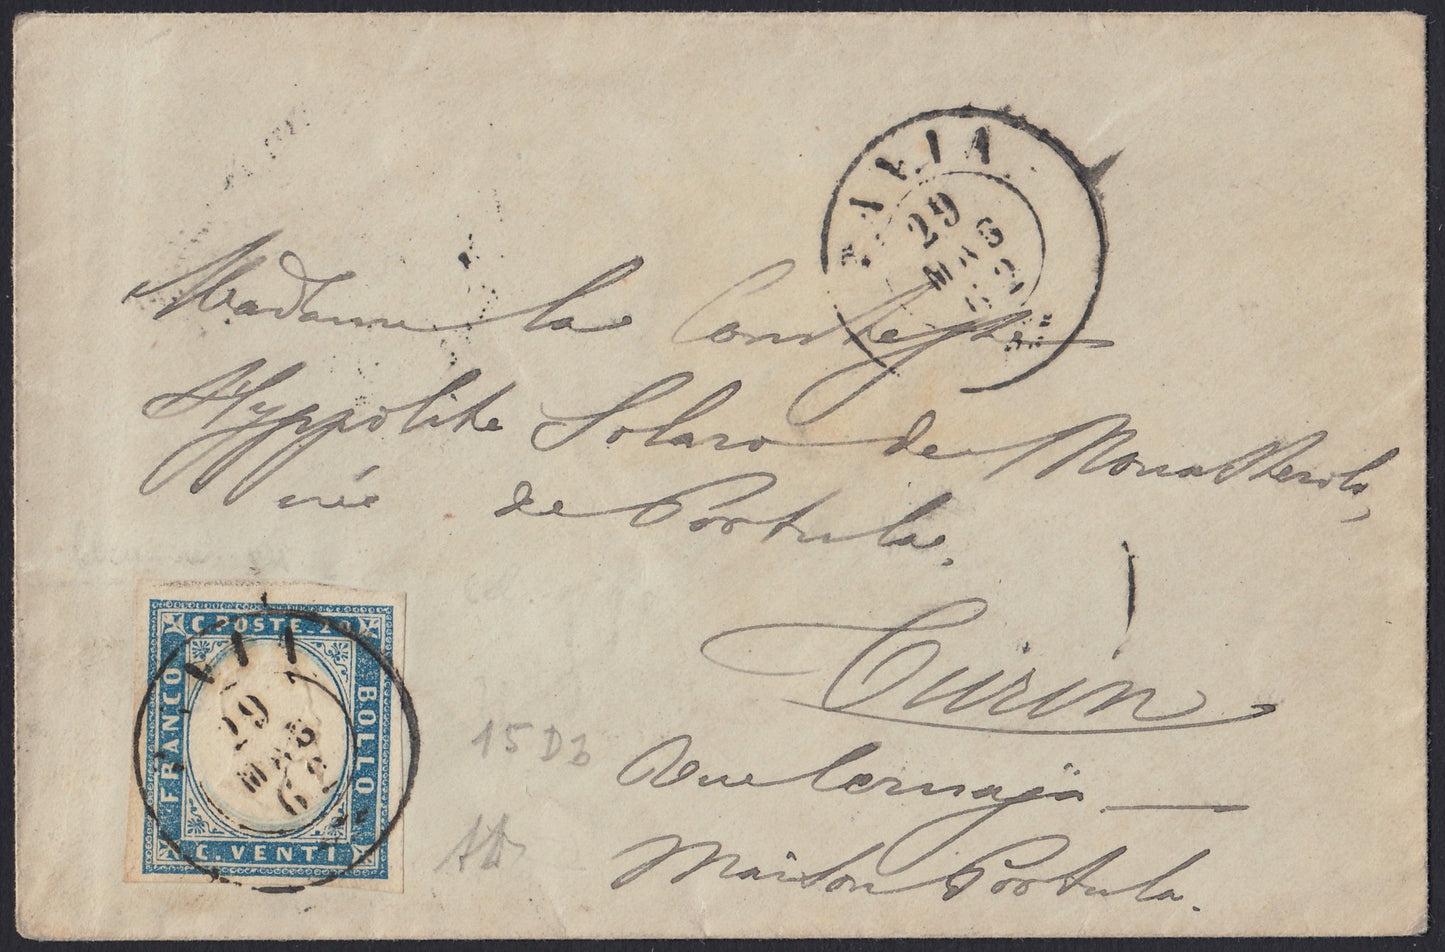 192 - 1862 - Lettera spedita da Pavia per Torino 29/5/62, affrancata con c. 20 celeste grigiastro II tavola tiratura 1861 (15Db)